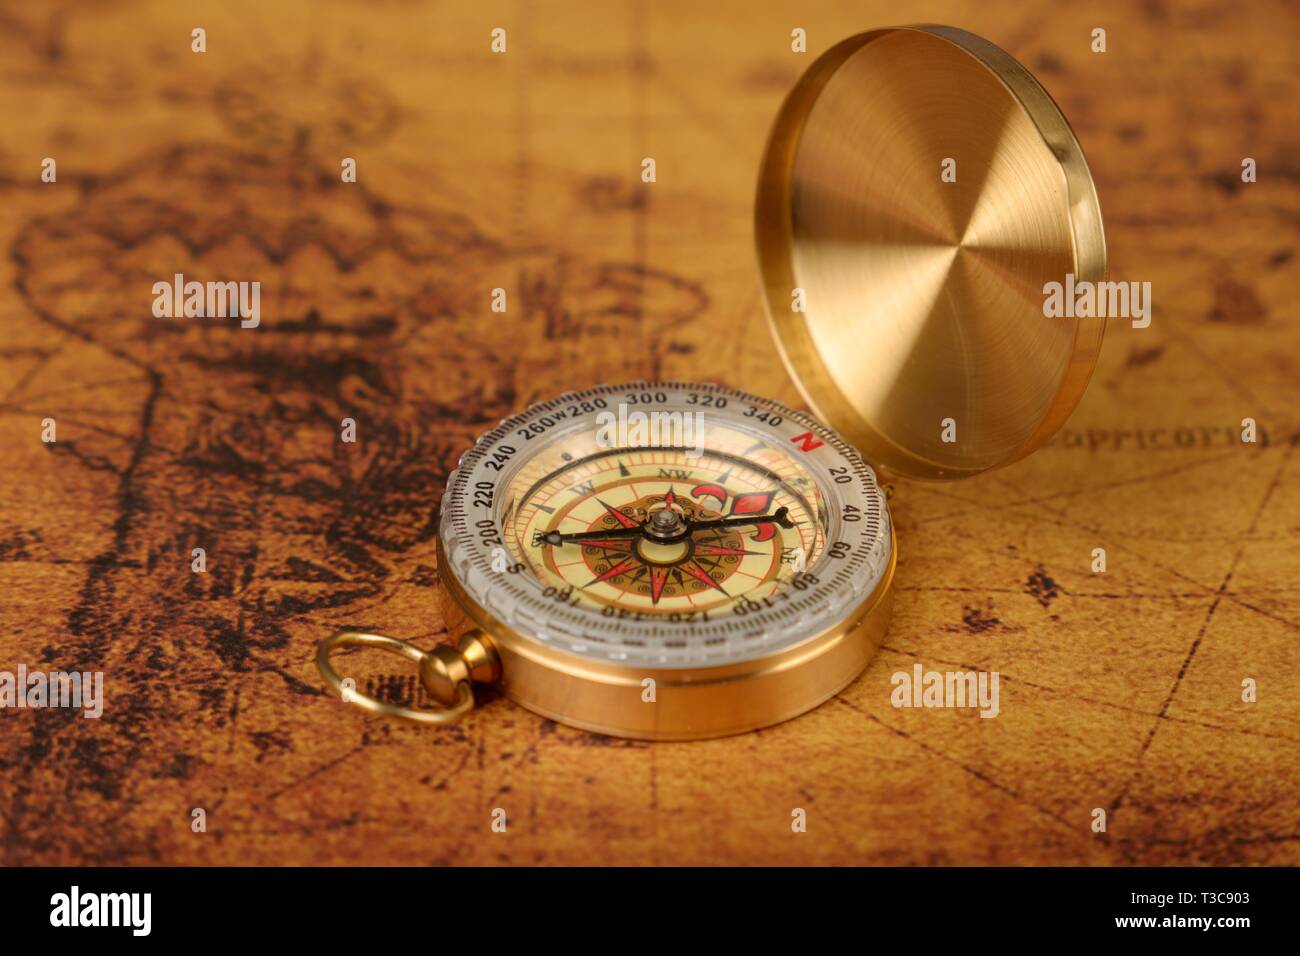 Vintage Kompass liegt auf einer alten Karte Welt - Abenteuer Geschichten Hintergrund Stockfoto